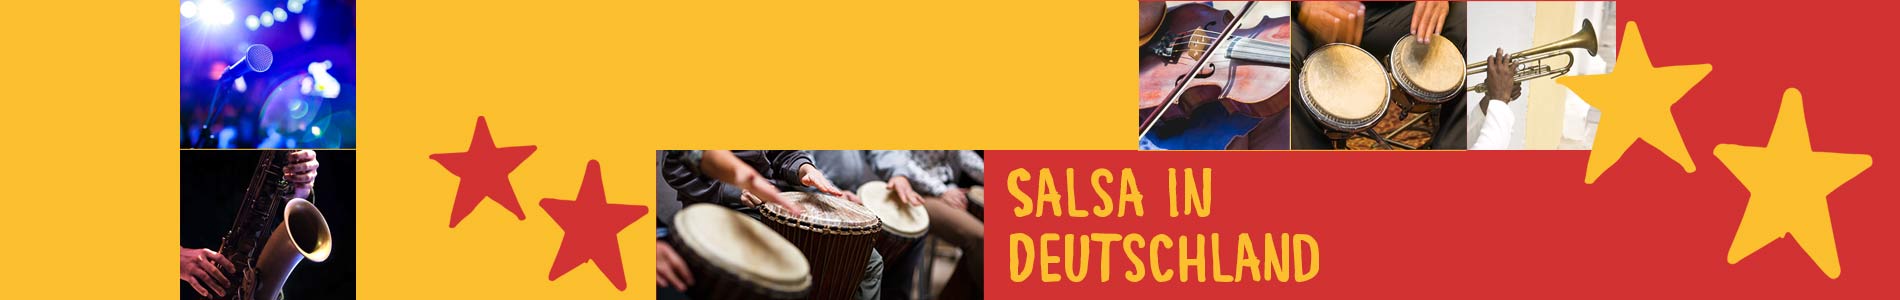 Salsa in Darlingerode – Salsa lernen und tanzen, Tanzkurse, Partys, Veranstaltungen